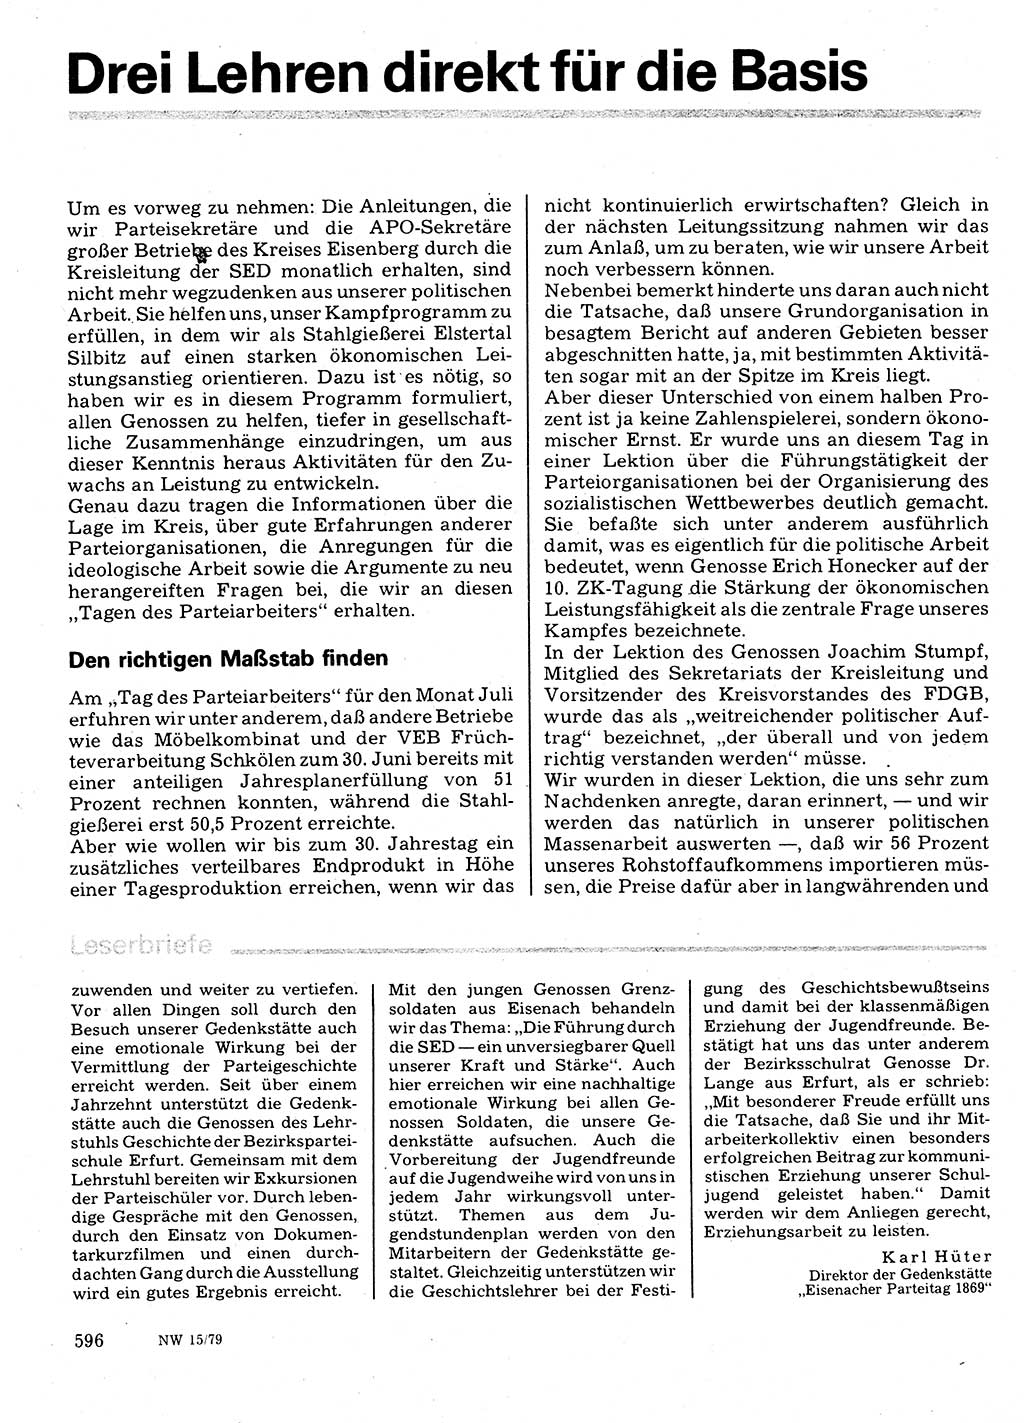 Neuer Weg (NW), Organ des Zentralkomitees (ZK) der SED (Sozialistische Einheitspartei Deutschlands) für Fragen des Parteilebens, 34. Jahrgang [Deutsche Demokratische Republik (DDR)] 1979, Seite 596 (NW ZK SED DDR 1979, S. 596)